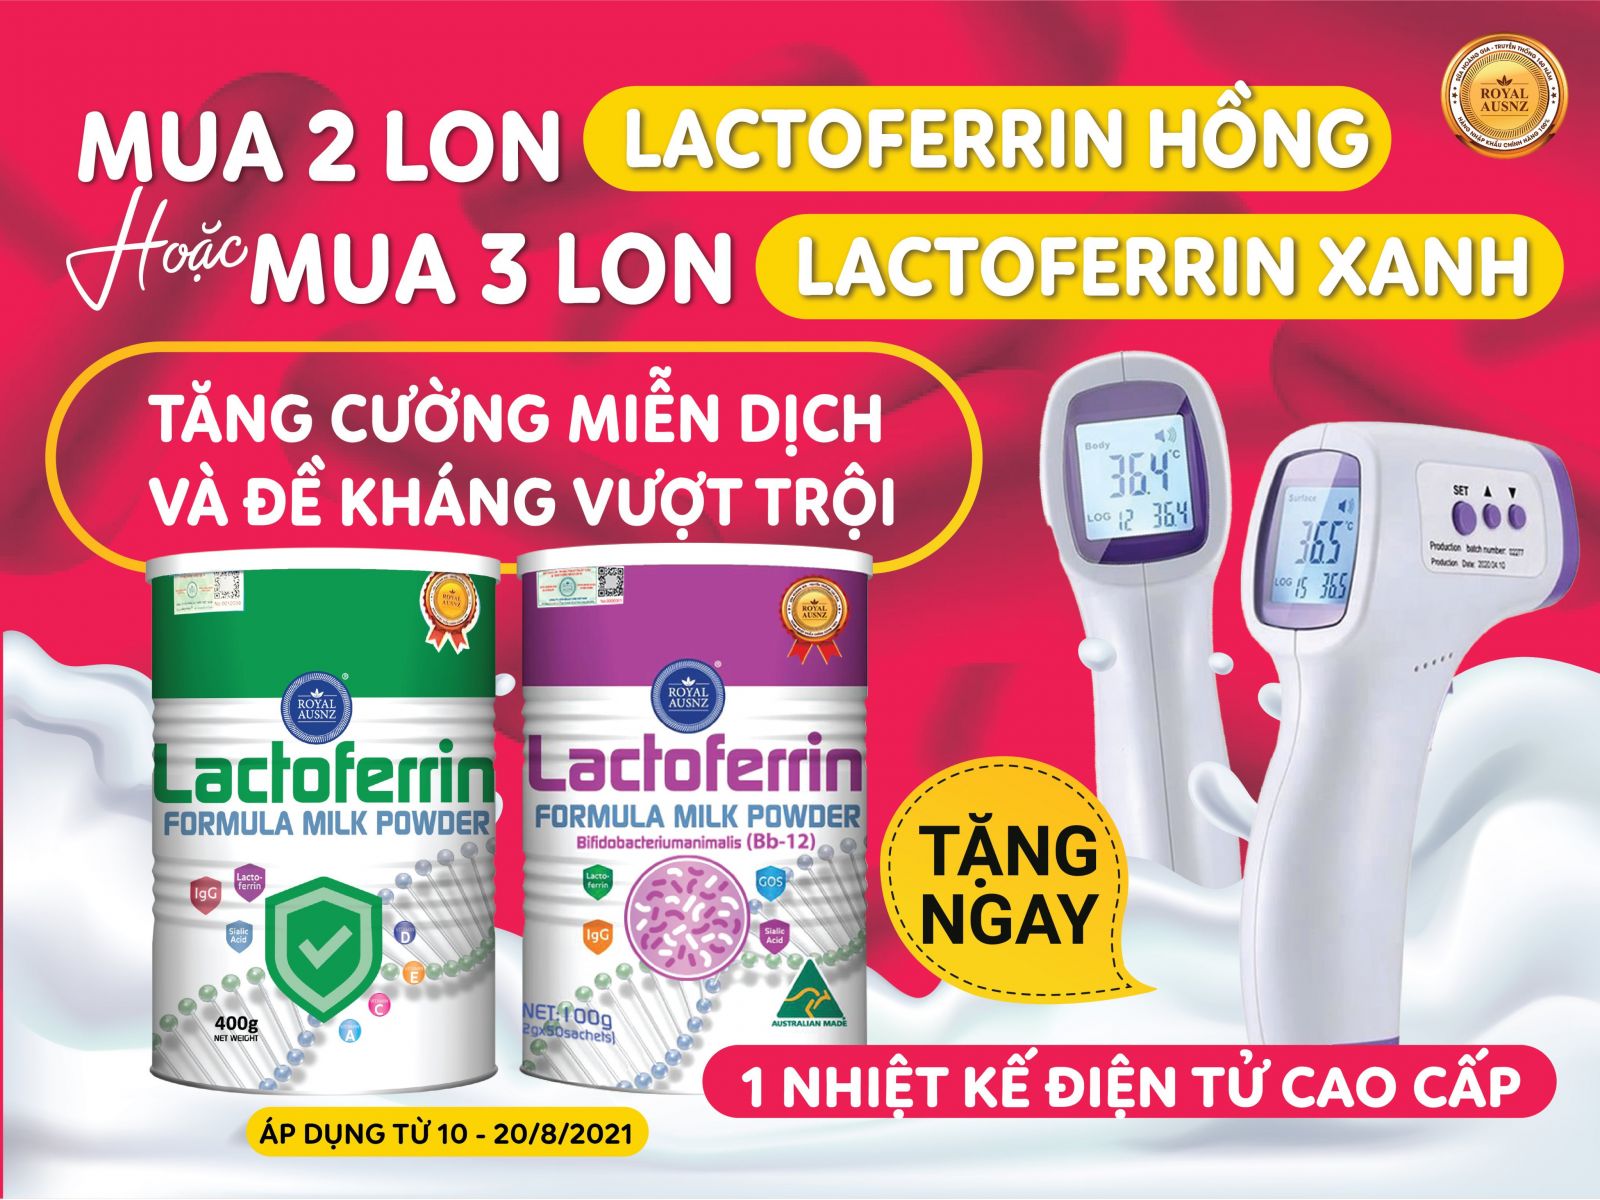 Ưu đãi khi mua sữa Lactoferrin tháng 8 được tặng nhiệt kế cao cấp